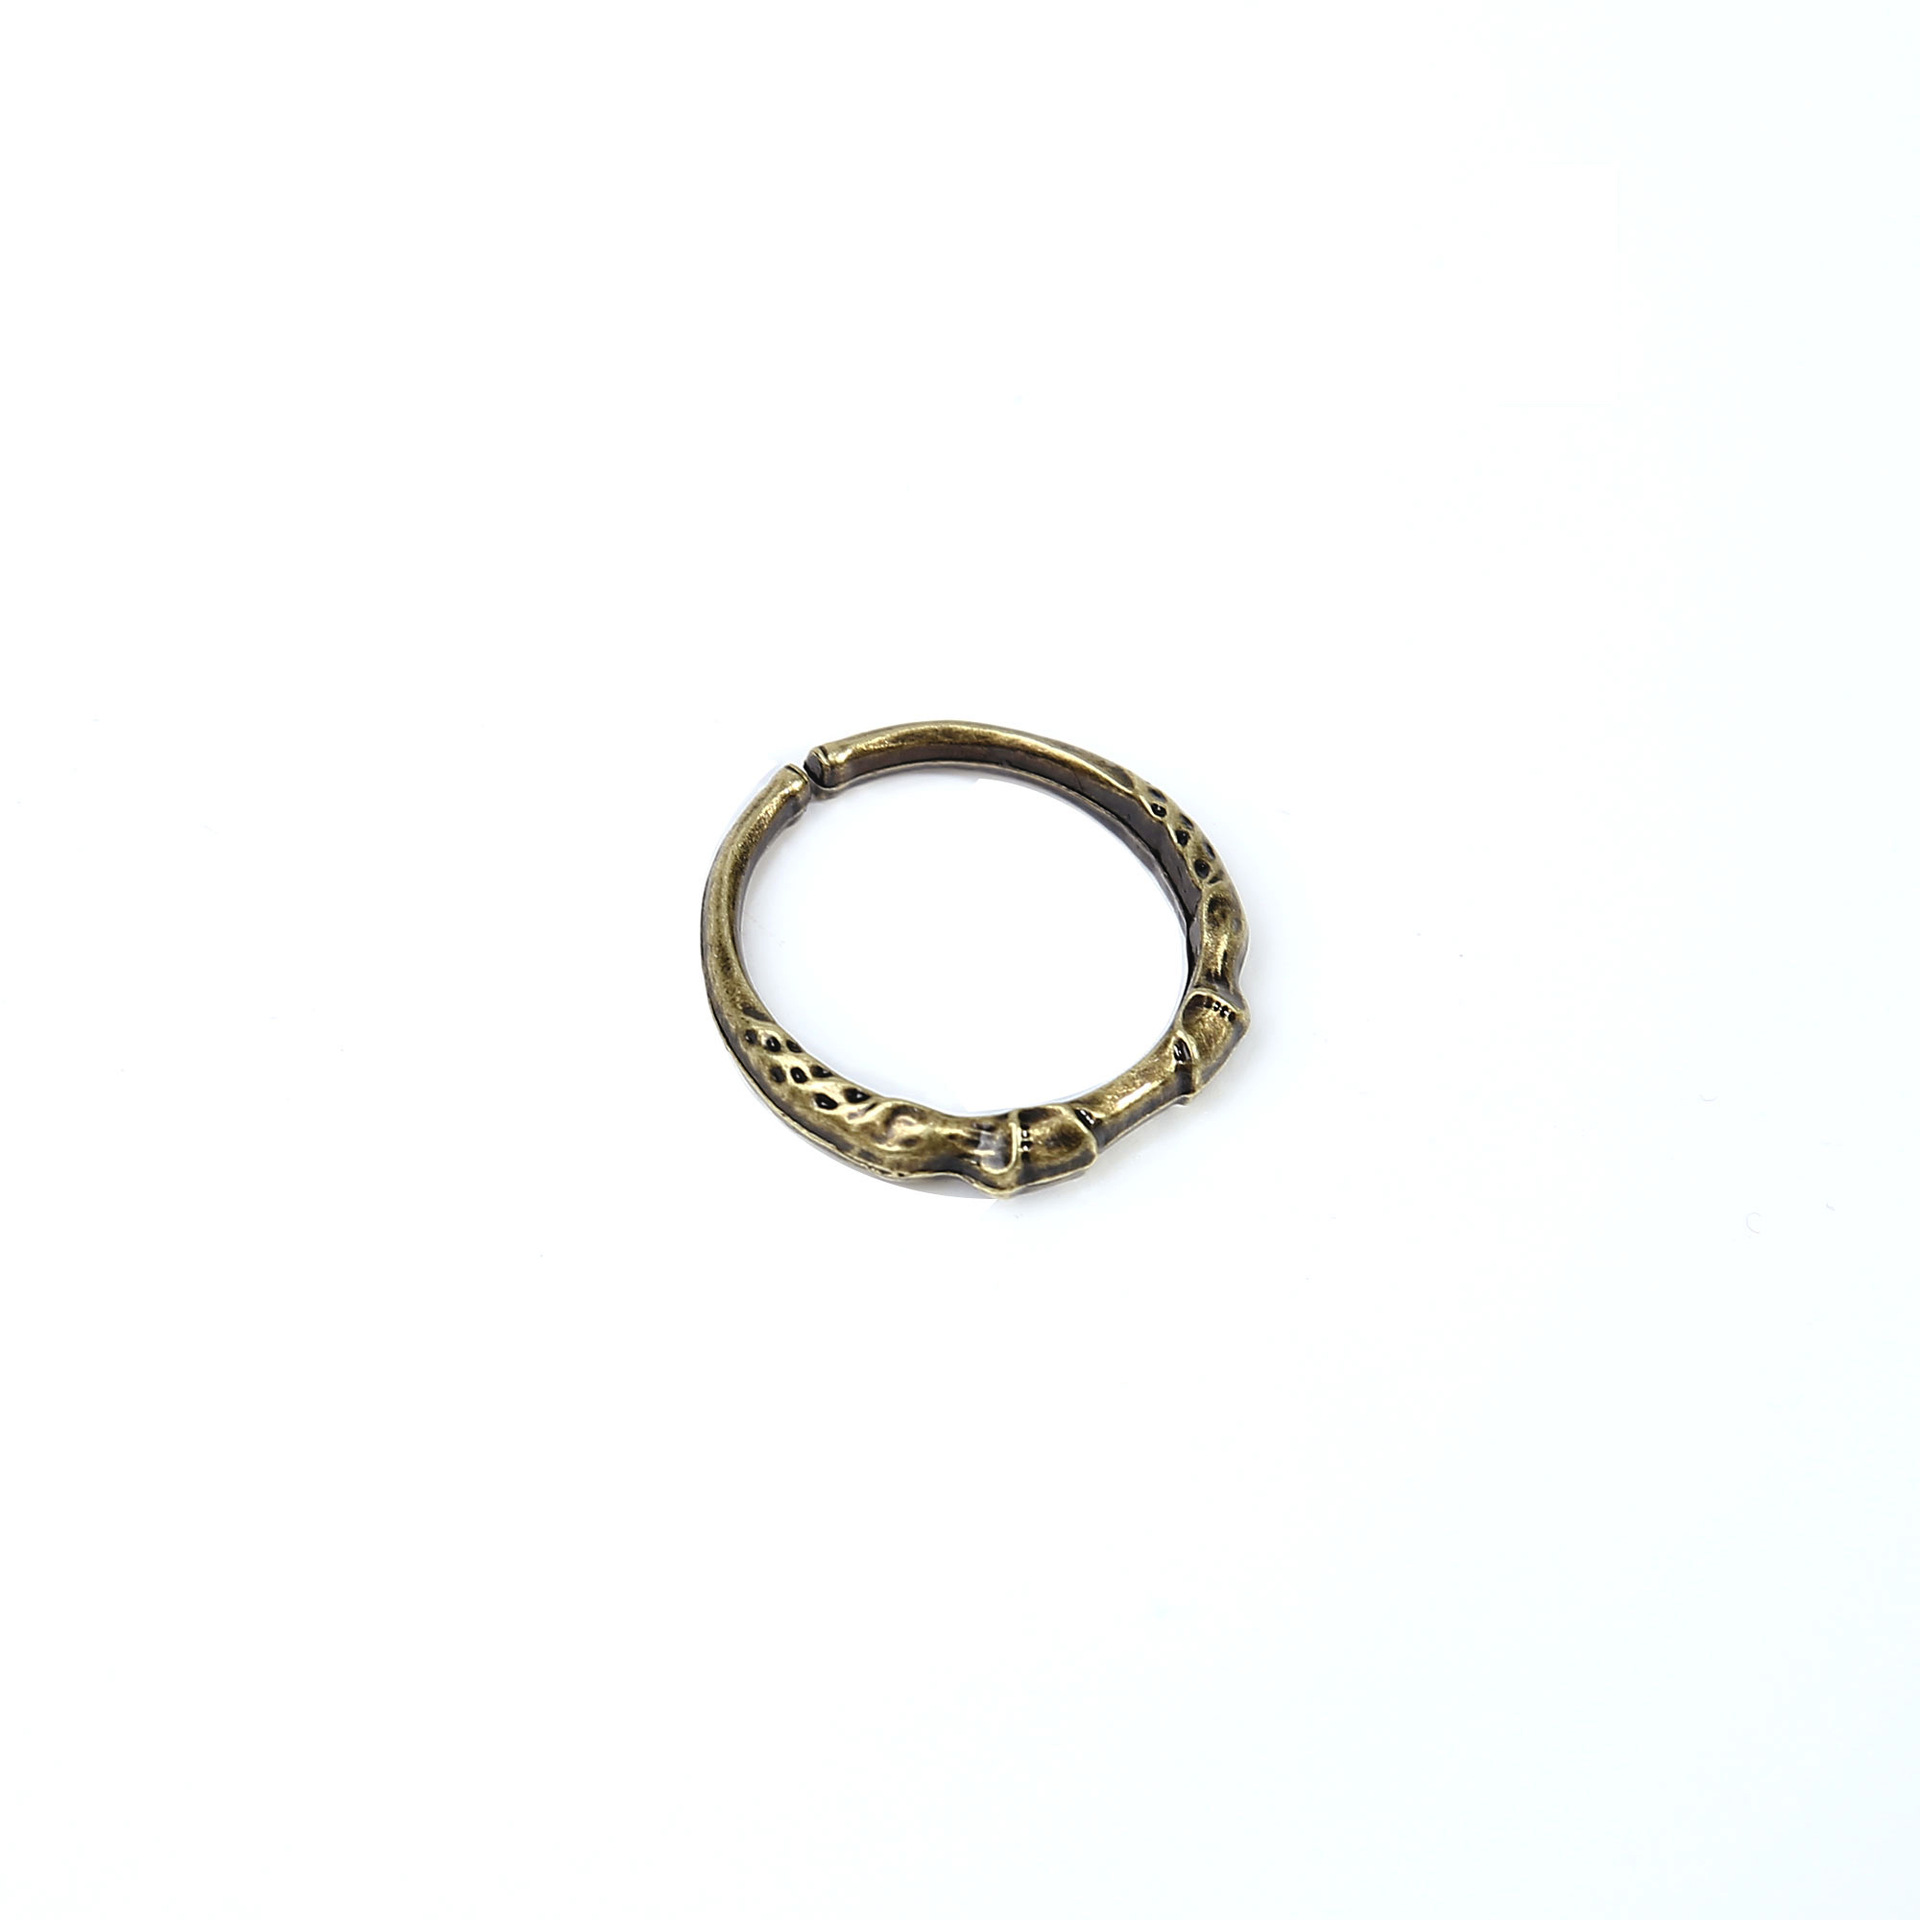 Buy Erdtree's Favor 2 Necklace Talisman Solid Brass Cosplay 1.531.21 Fan  Made Erd Elden Gift Jewelry Kecap Online in India - Etsy